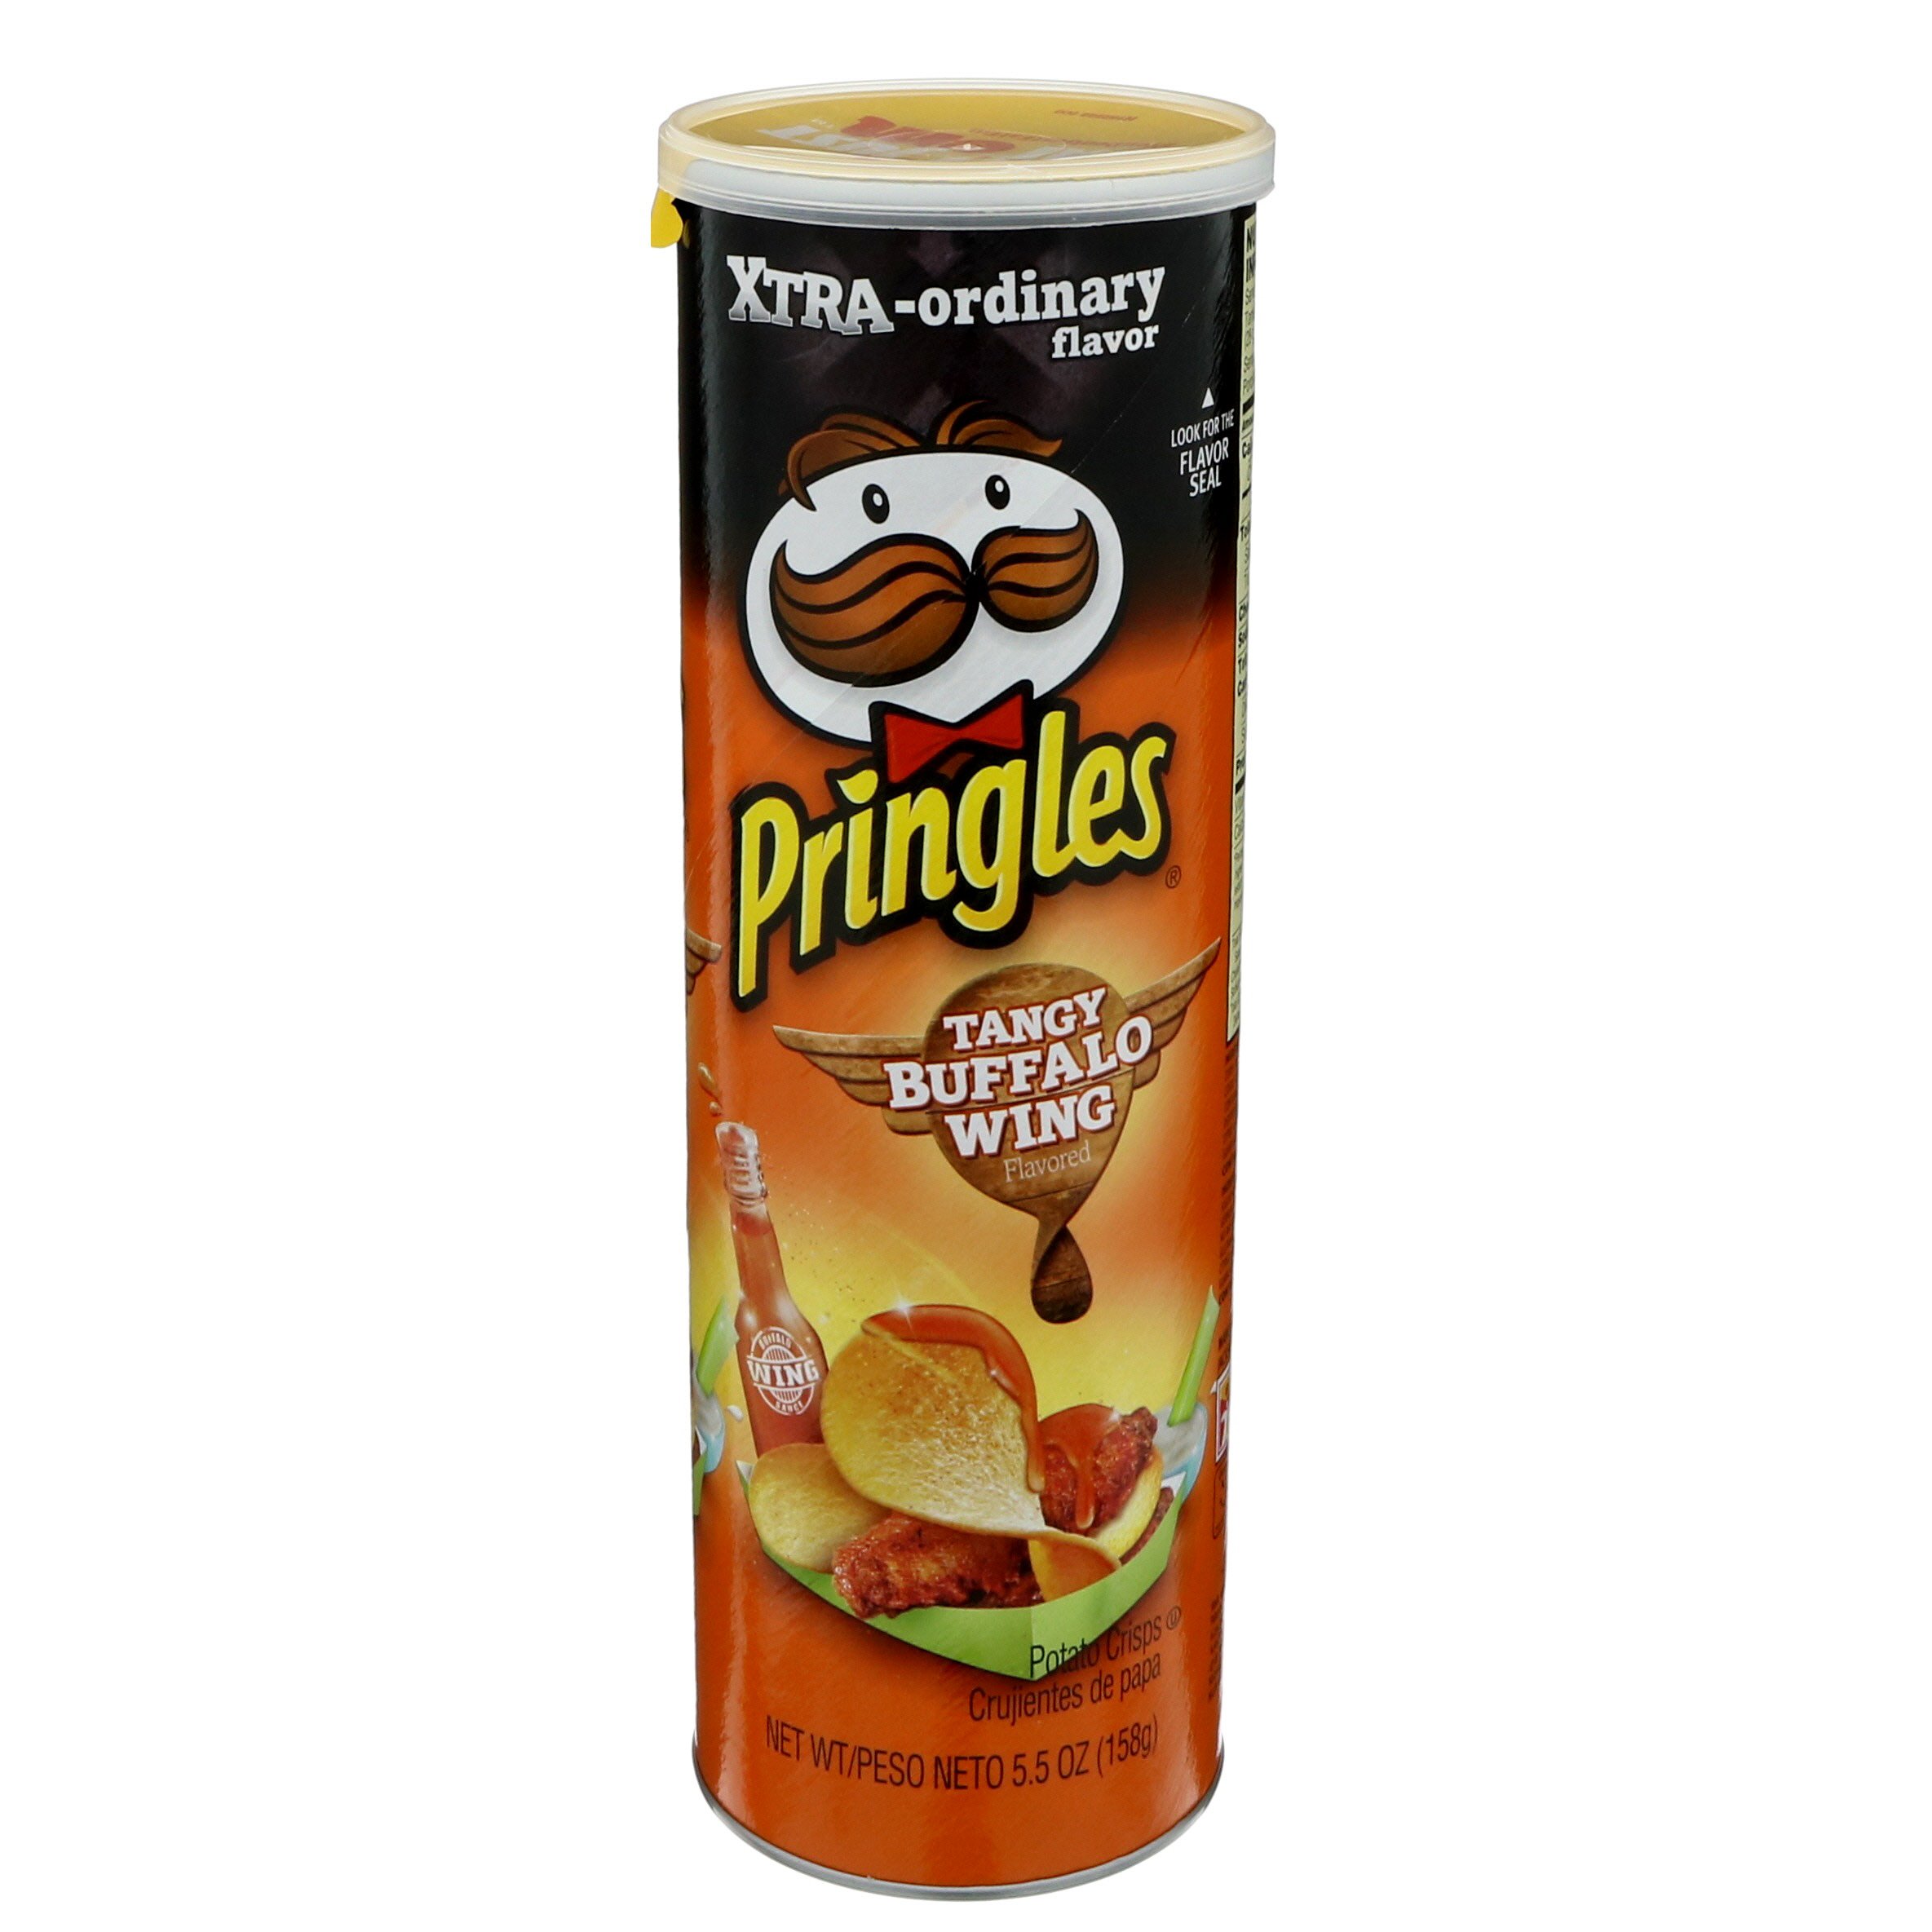 Pringles Tangy Buffalo Wing - Shop Chips at H-E-B